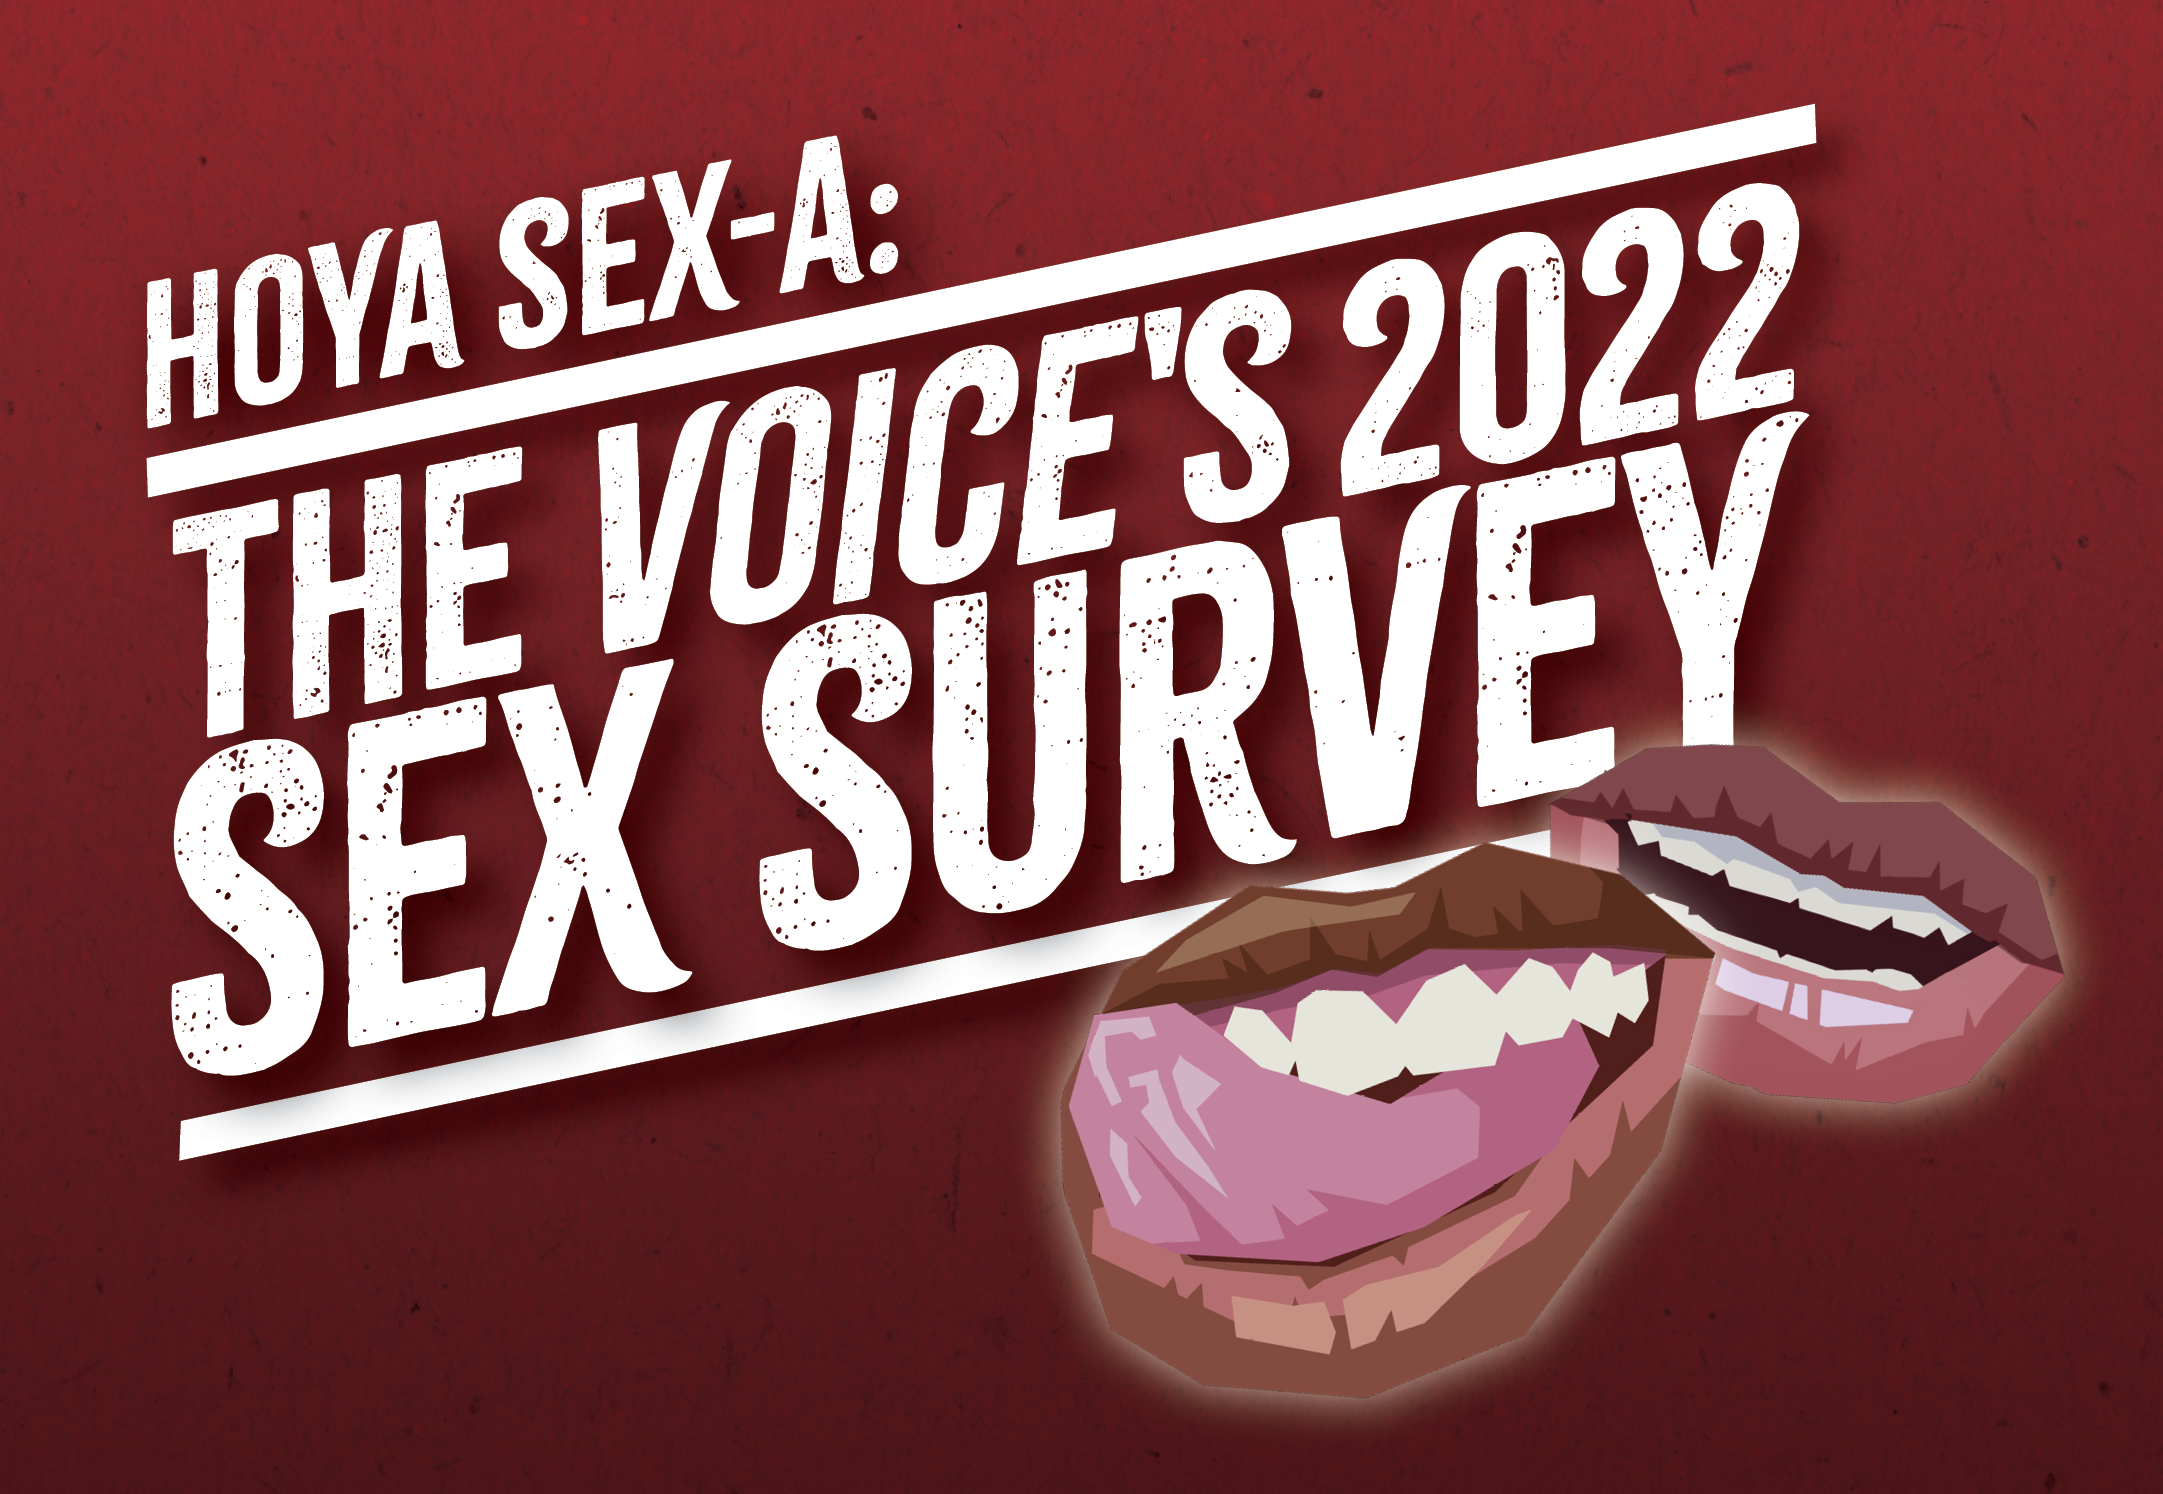 Hoya Sex-a The Voices 2022 sex survey